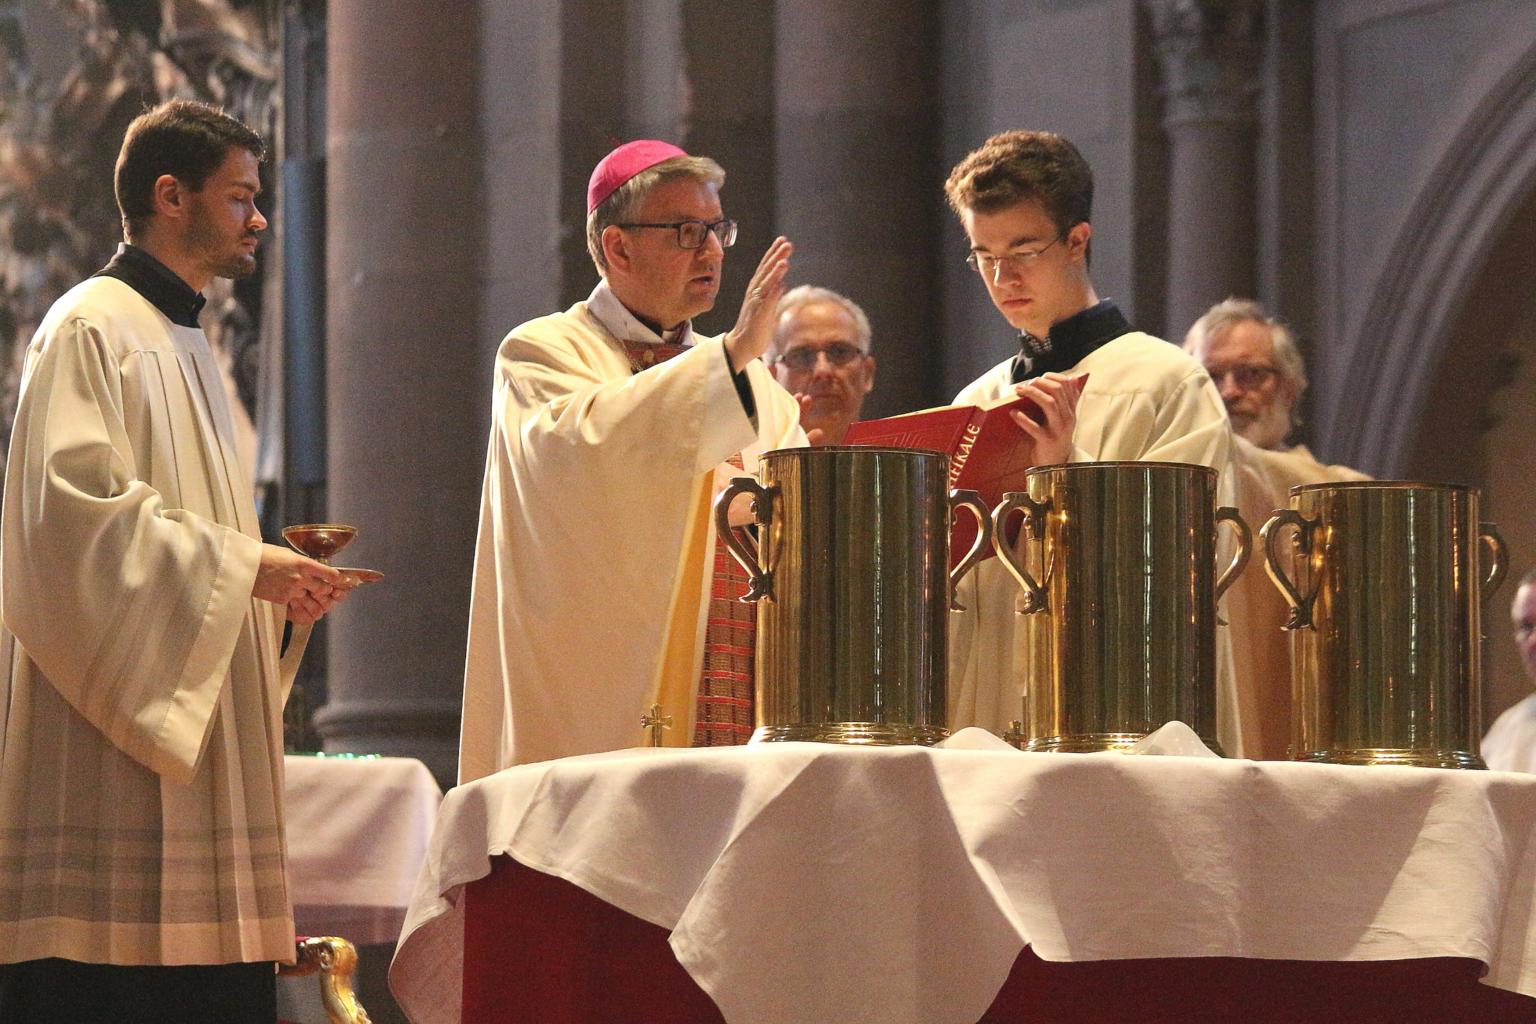 Mainz, 15. April 2019: Bischof Peter Kohlgraf bei der Weihe der Heiligen Öle während der Missa chrismatis im Mainzer Dom. (c) Bistum Mainz / Blum